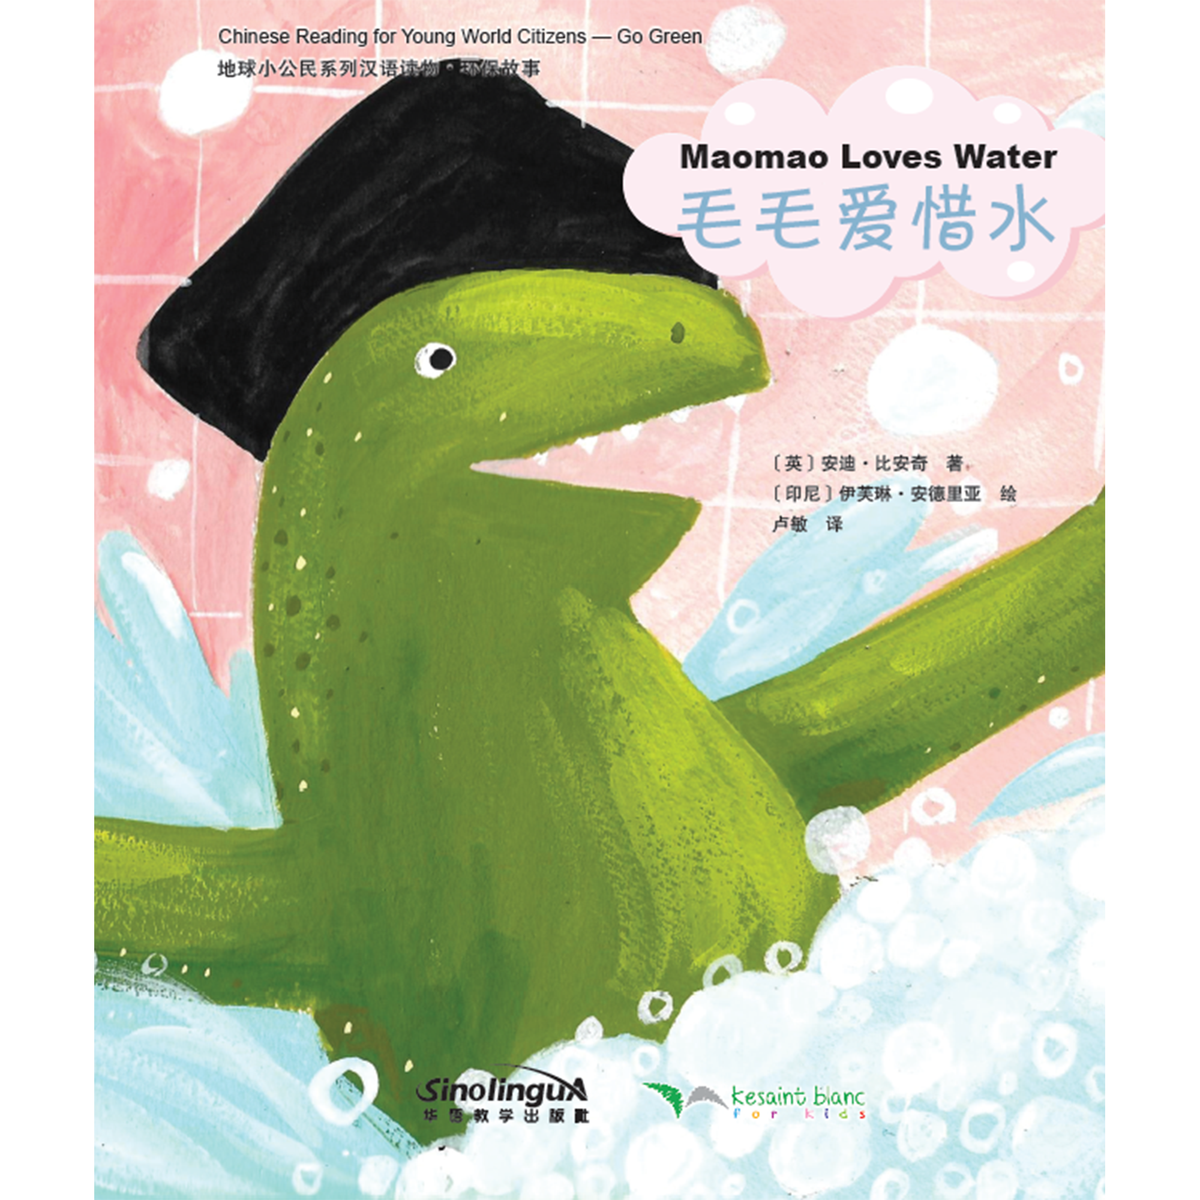 地球小公民系列汉语读物：环保故事·毛毛爱惜水